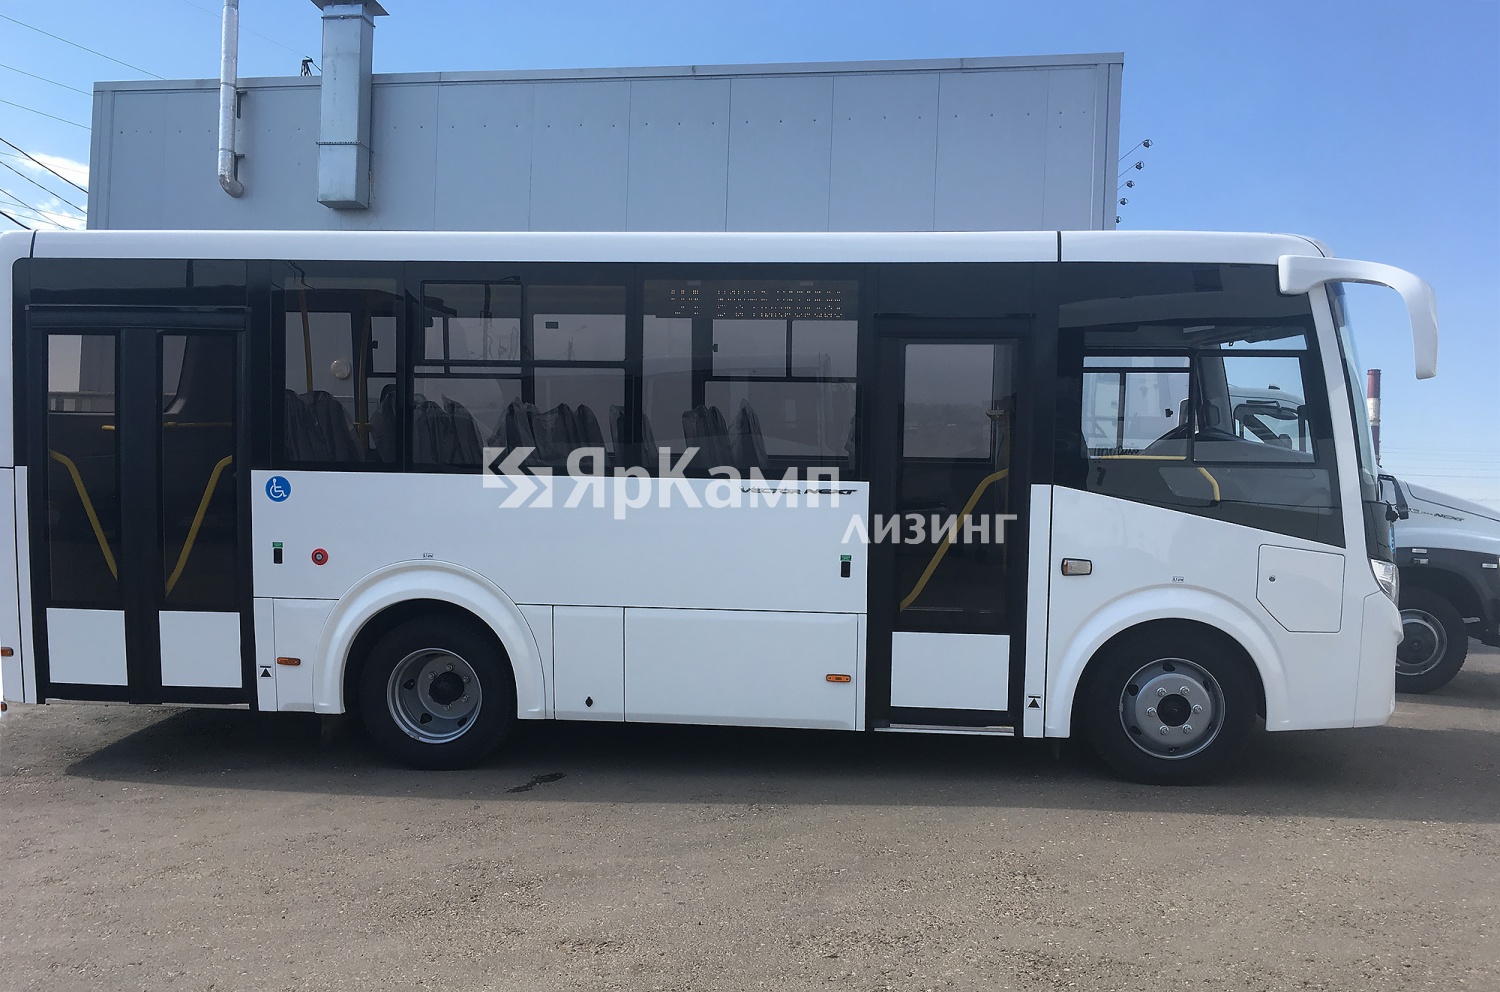 Автобусы ПАЗ 320435-04 Вектор NEXT переданы в финансовую аренду